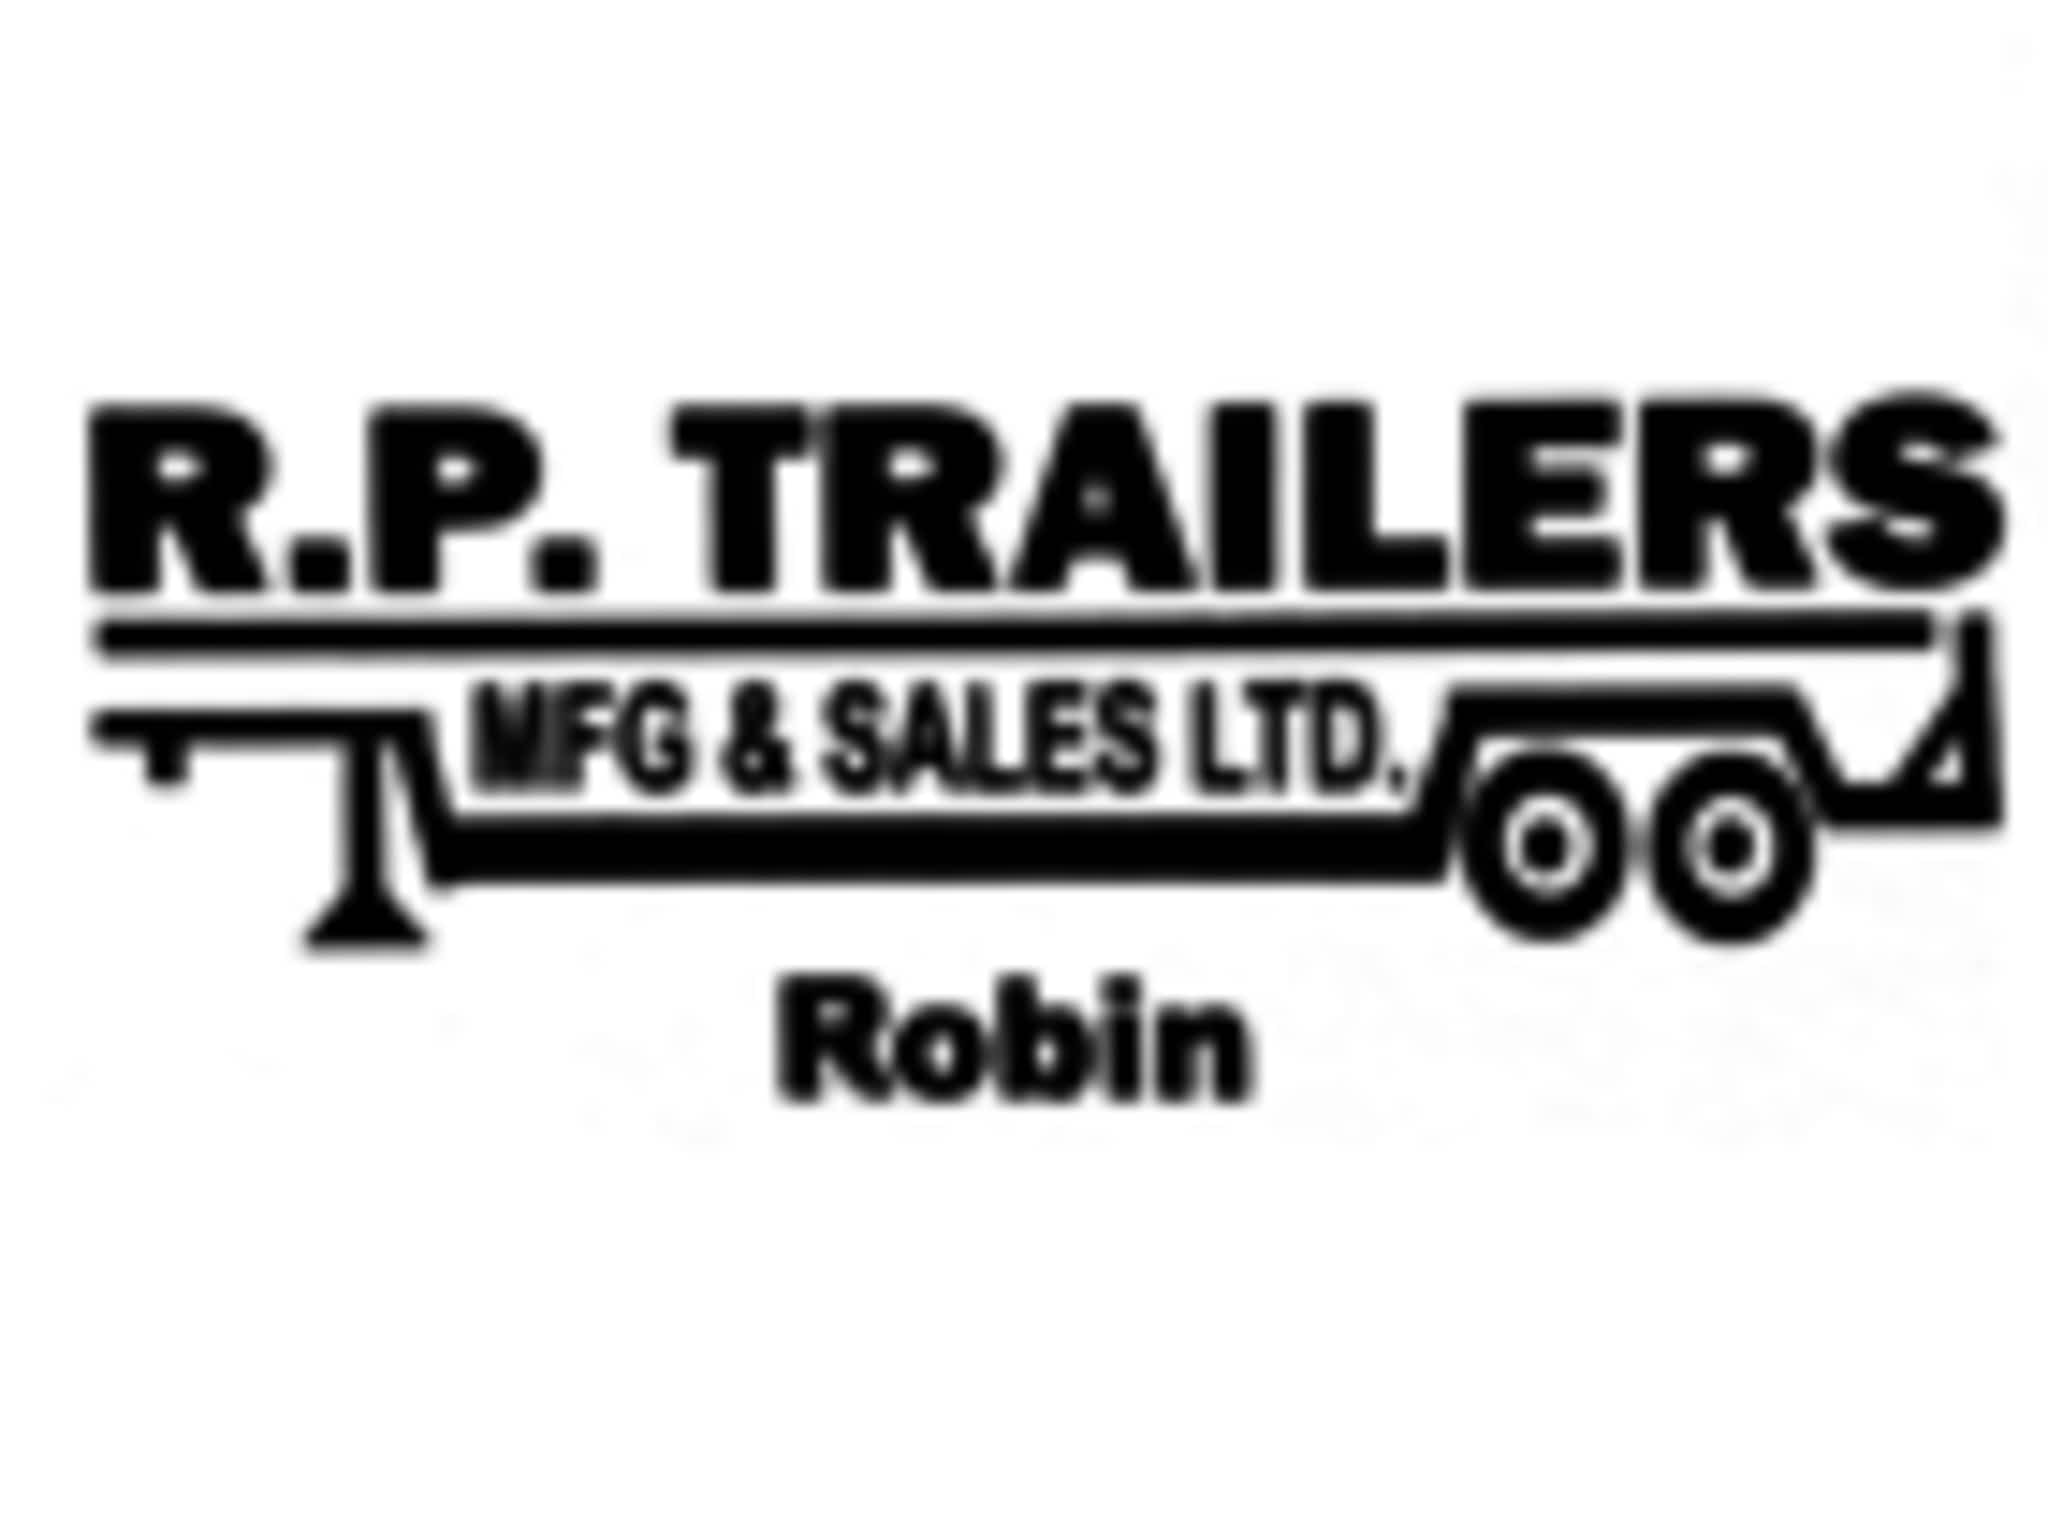 photo RP Trailers Mfgs & Sales Ltd